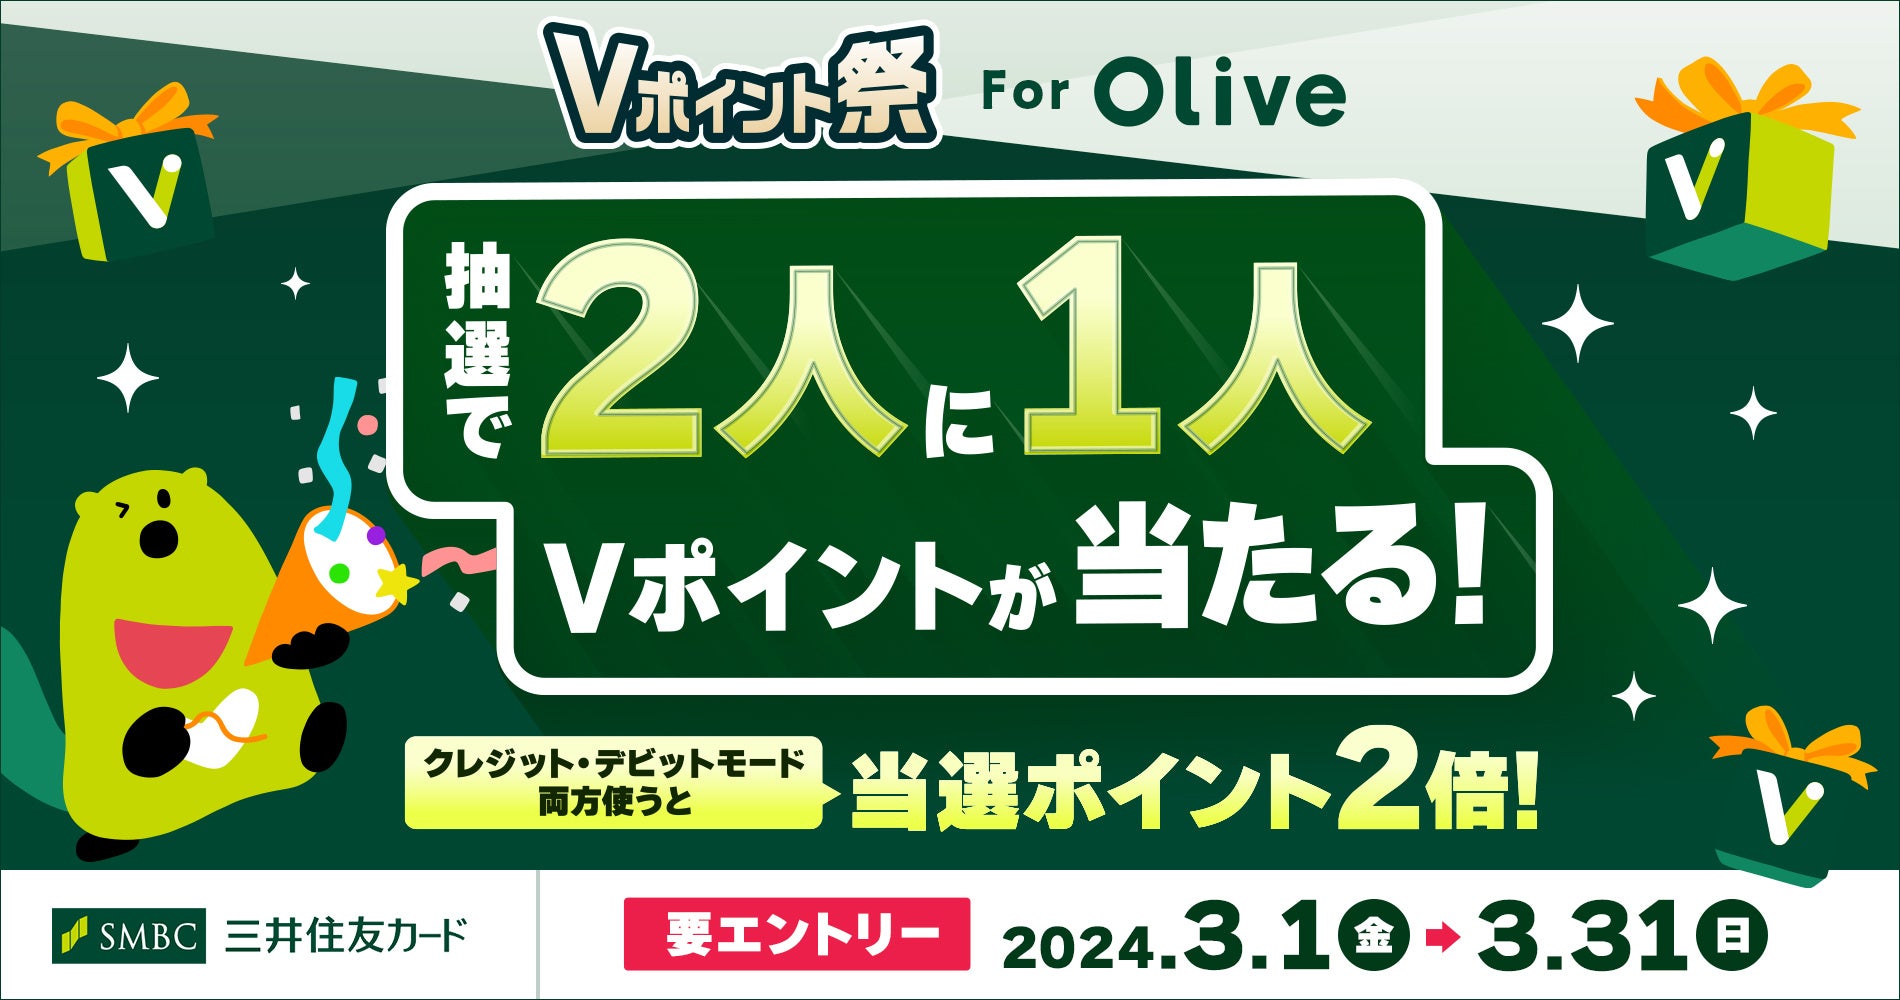 三井住友カード、「Vポイント祭 for Olive」を開催